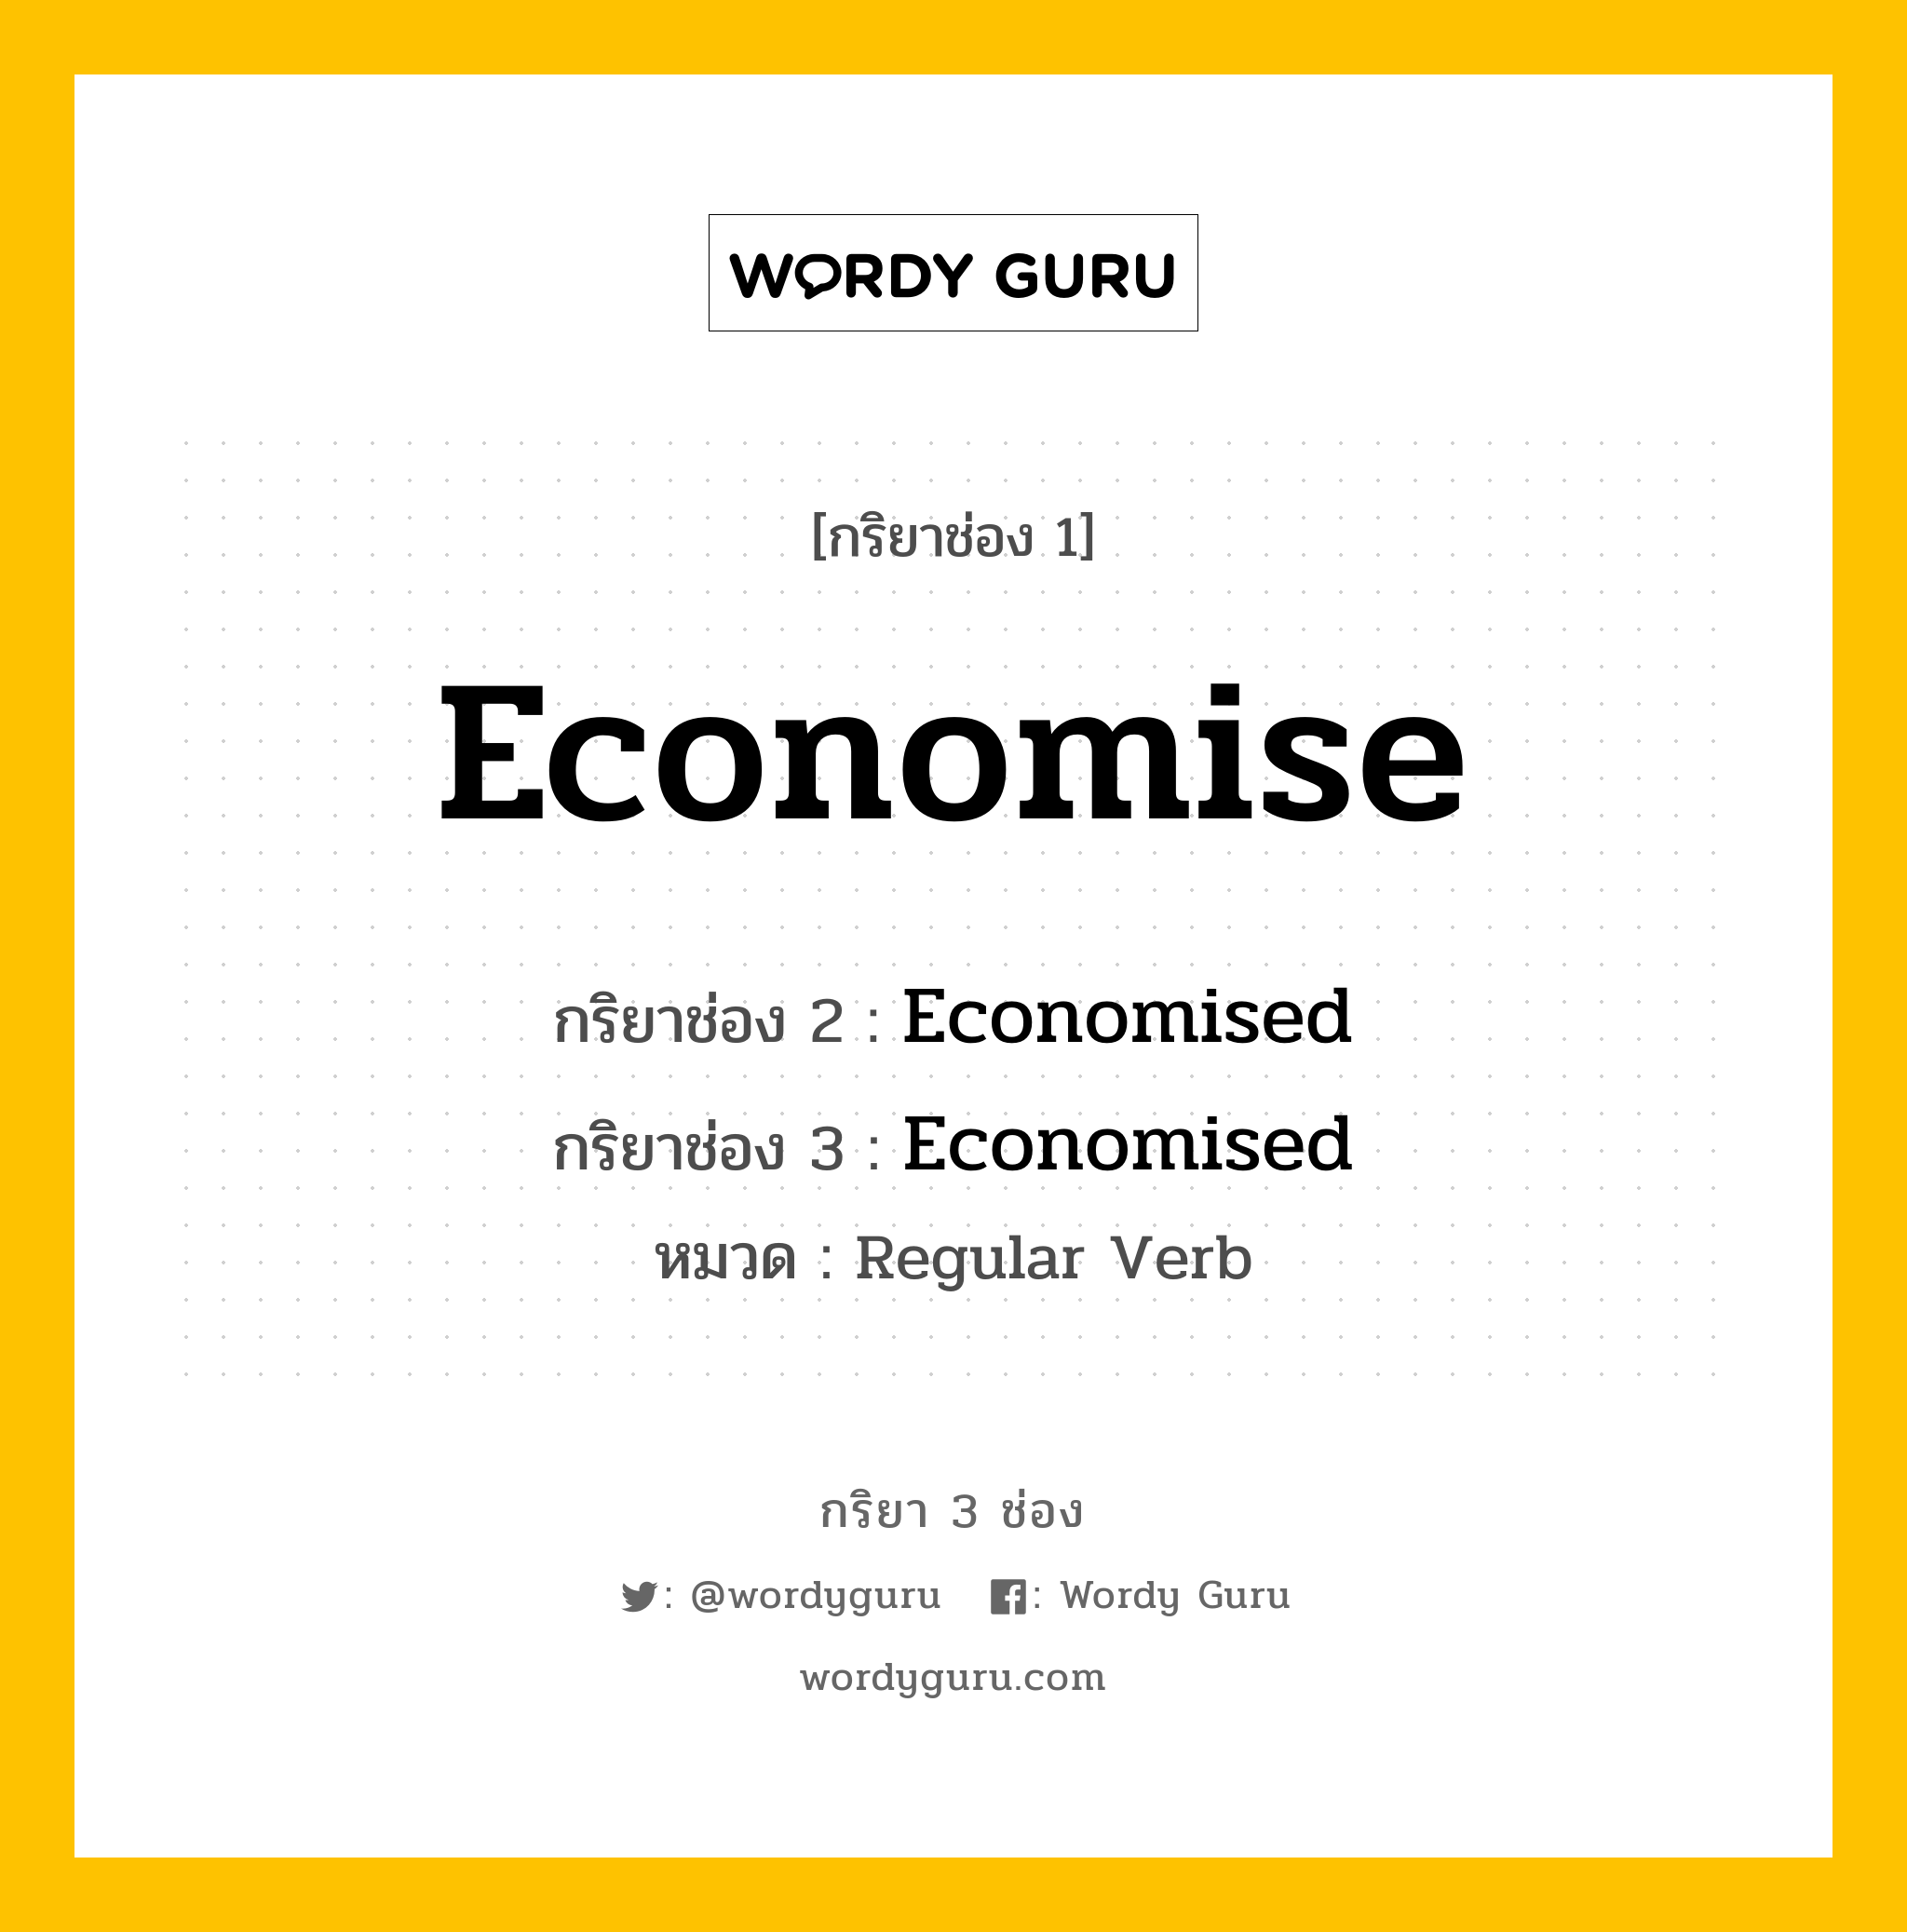 กริยา 3 ช่อง: Economise ช่อง 2 Economise ช่อง 3 คืออะไร, กริยาช่อง 1 Economise กริยาช่อง 2 Economised กริยาช่อง 3 Economised หมวด Regular Verb หมวด Regular Verb